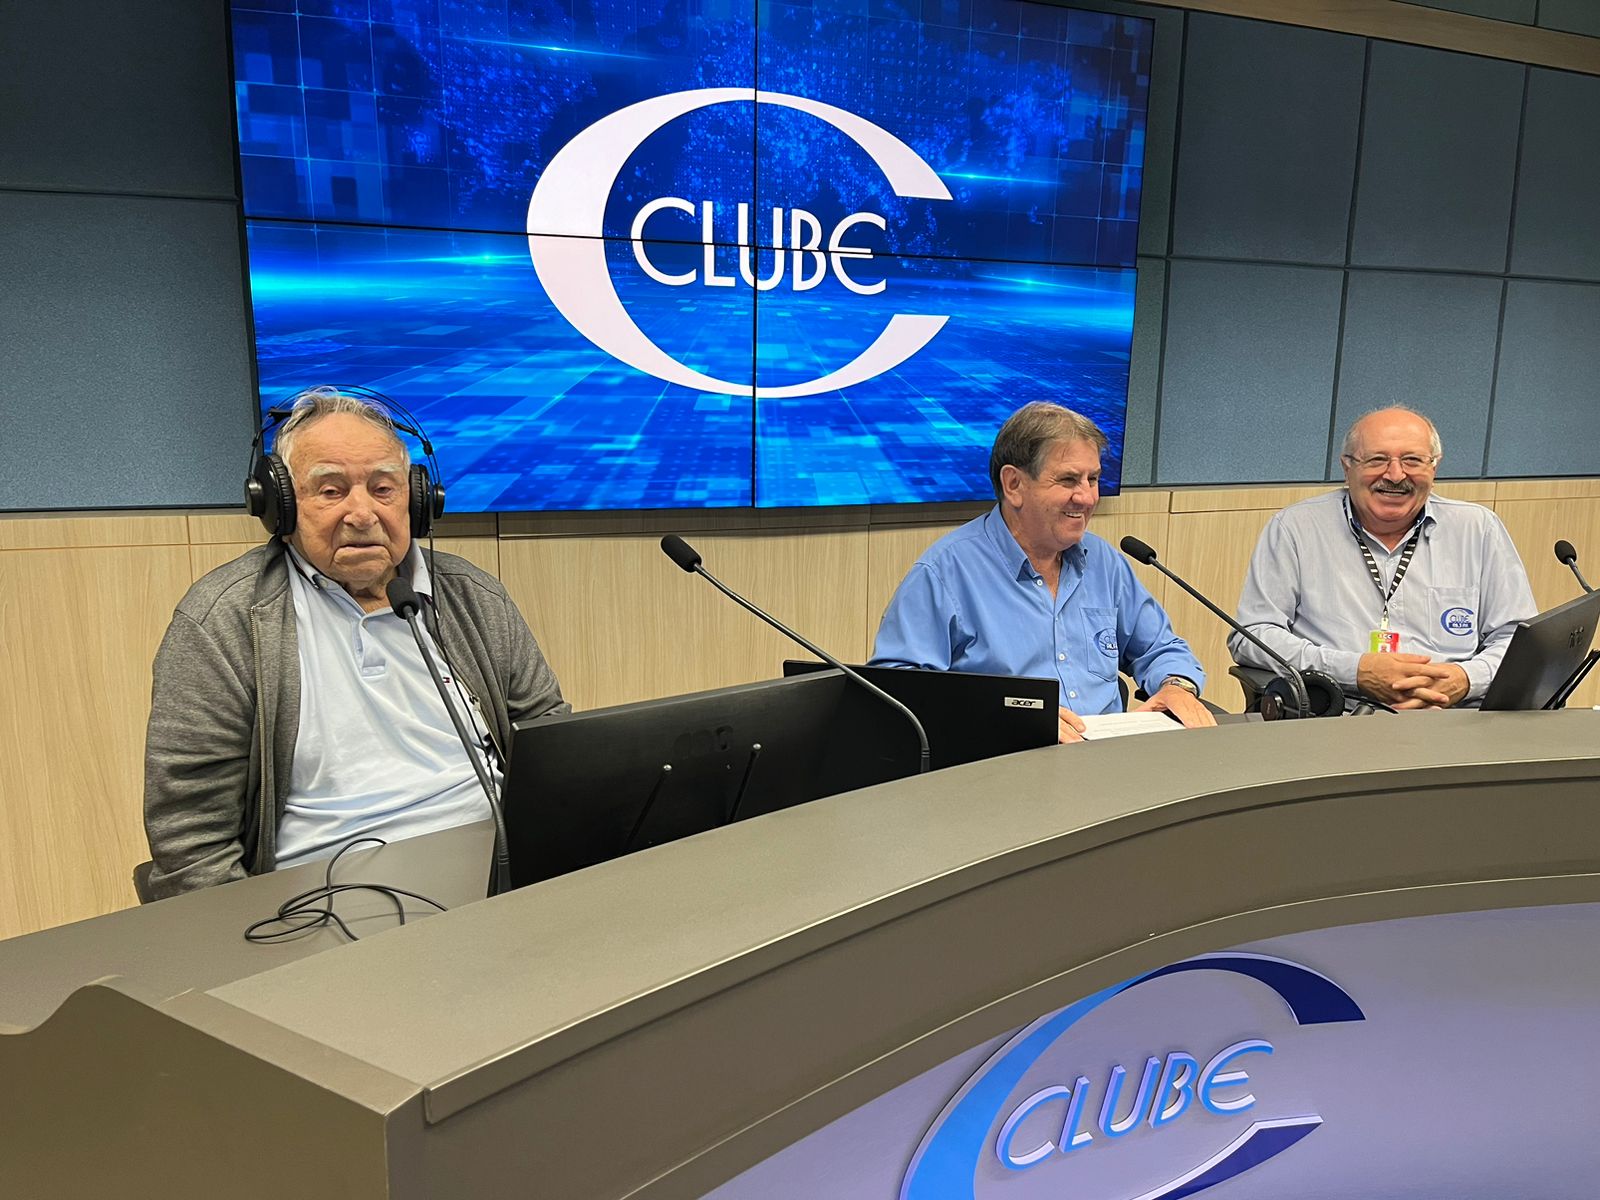 Rádio Clube renova programação para oferecer mais entretenimento e informação aos ouvintes